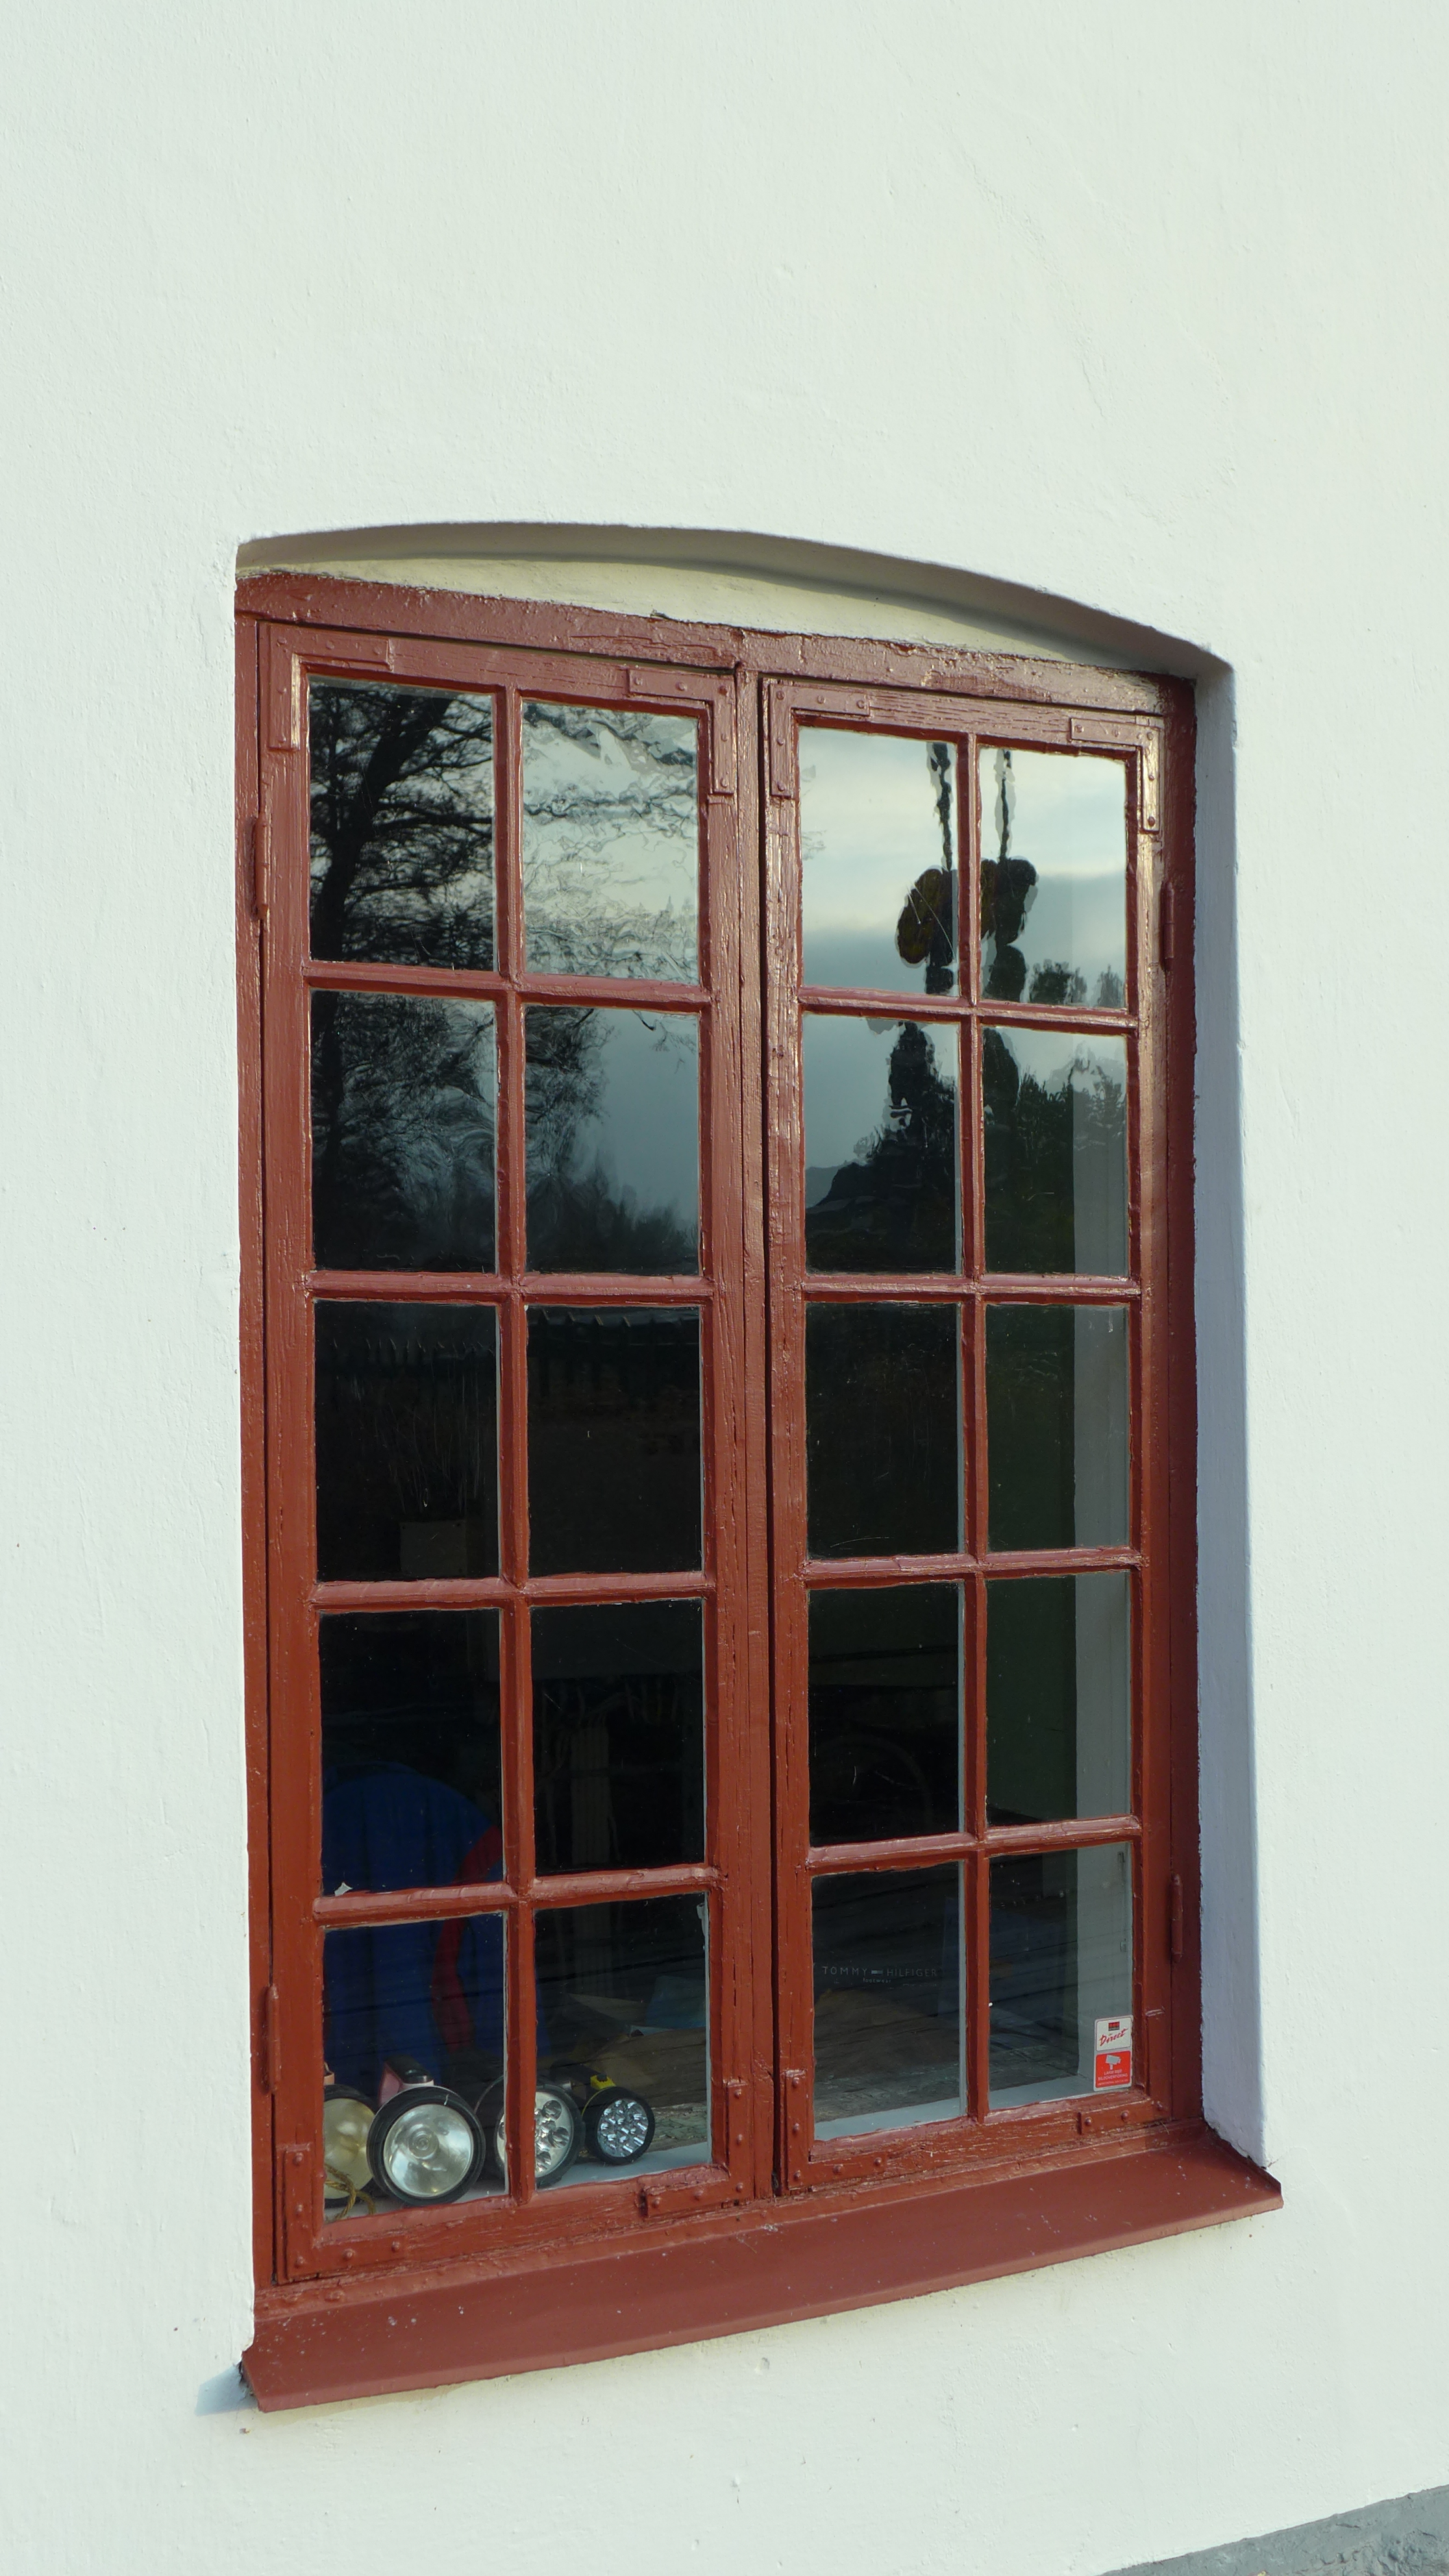 Fönster och dörrar är av trä, målade i engelskt rött - vissa har segmentbågsform. 